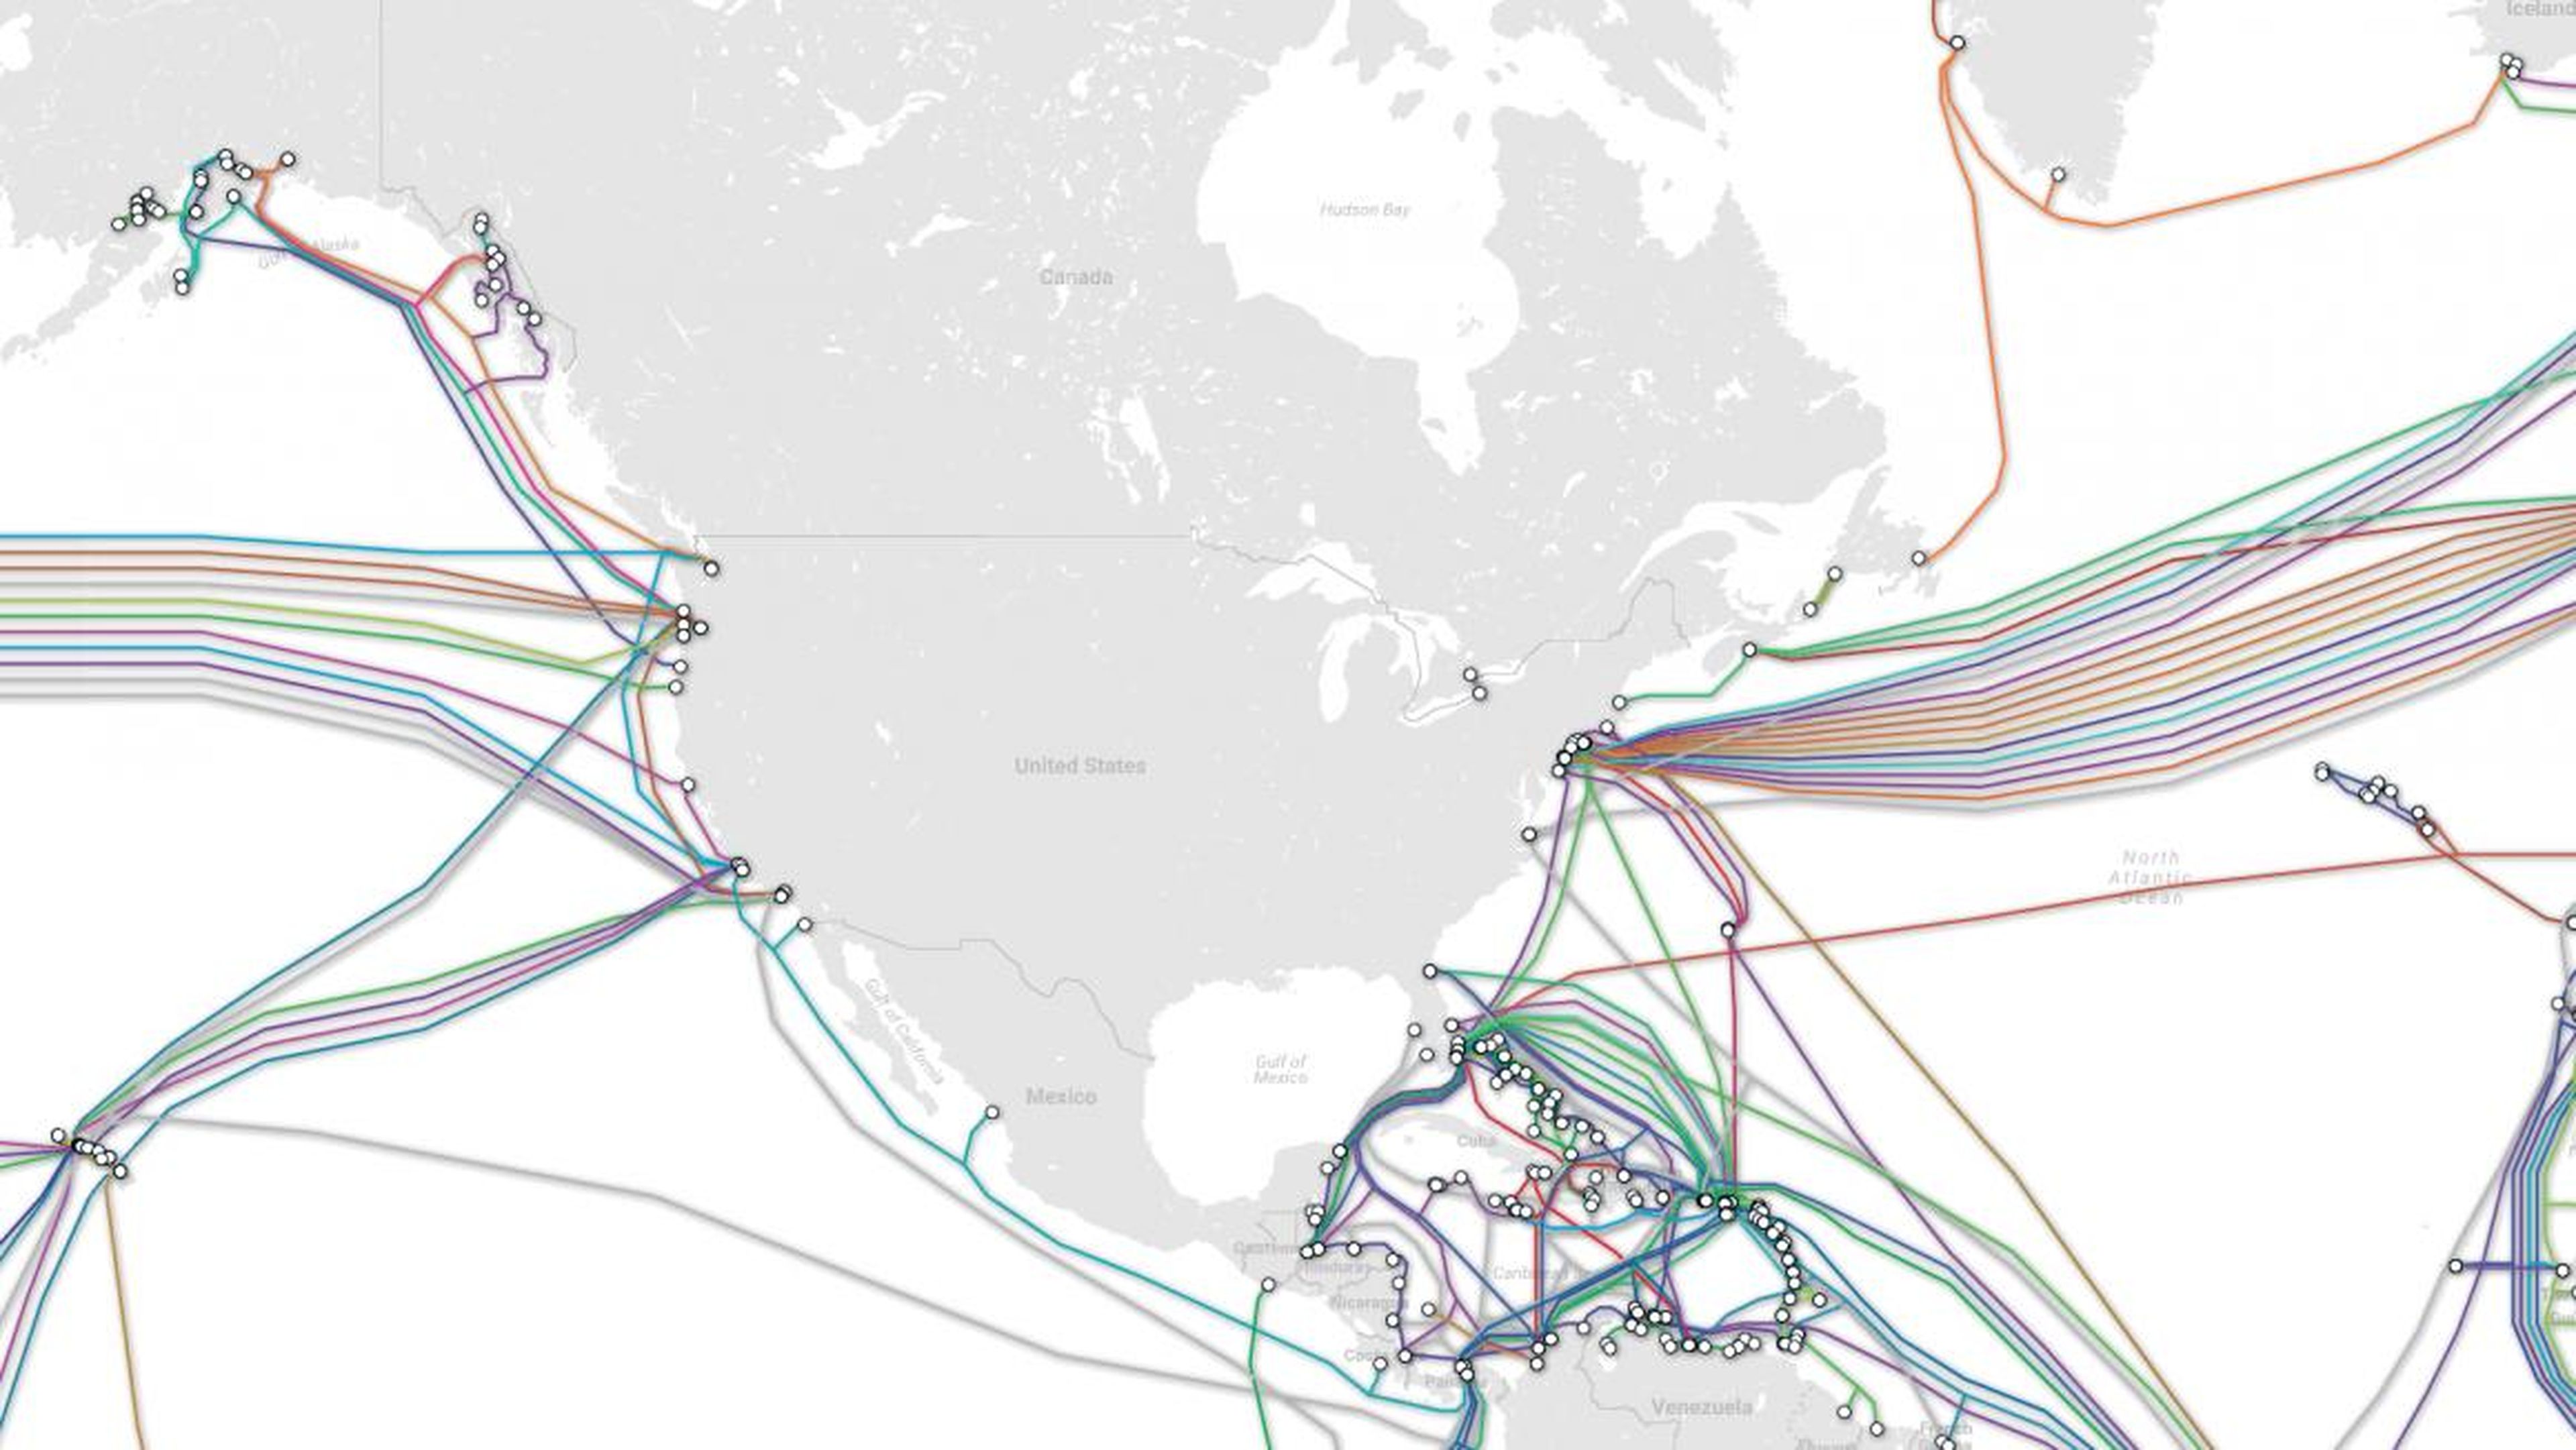 Miles de cables submarinos son la razón por la que puedes leer este artículo. Sirven para transmitir las redes de internet.